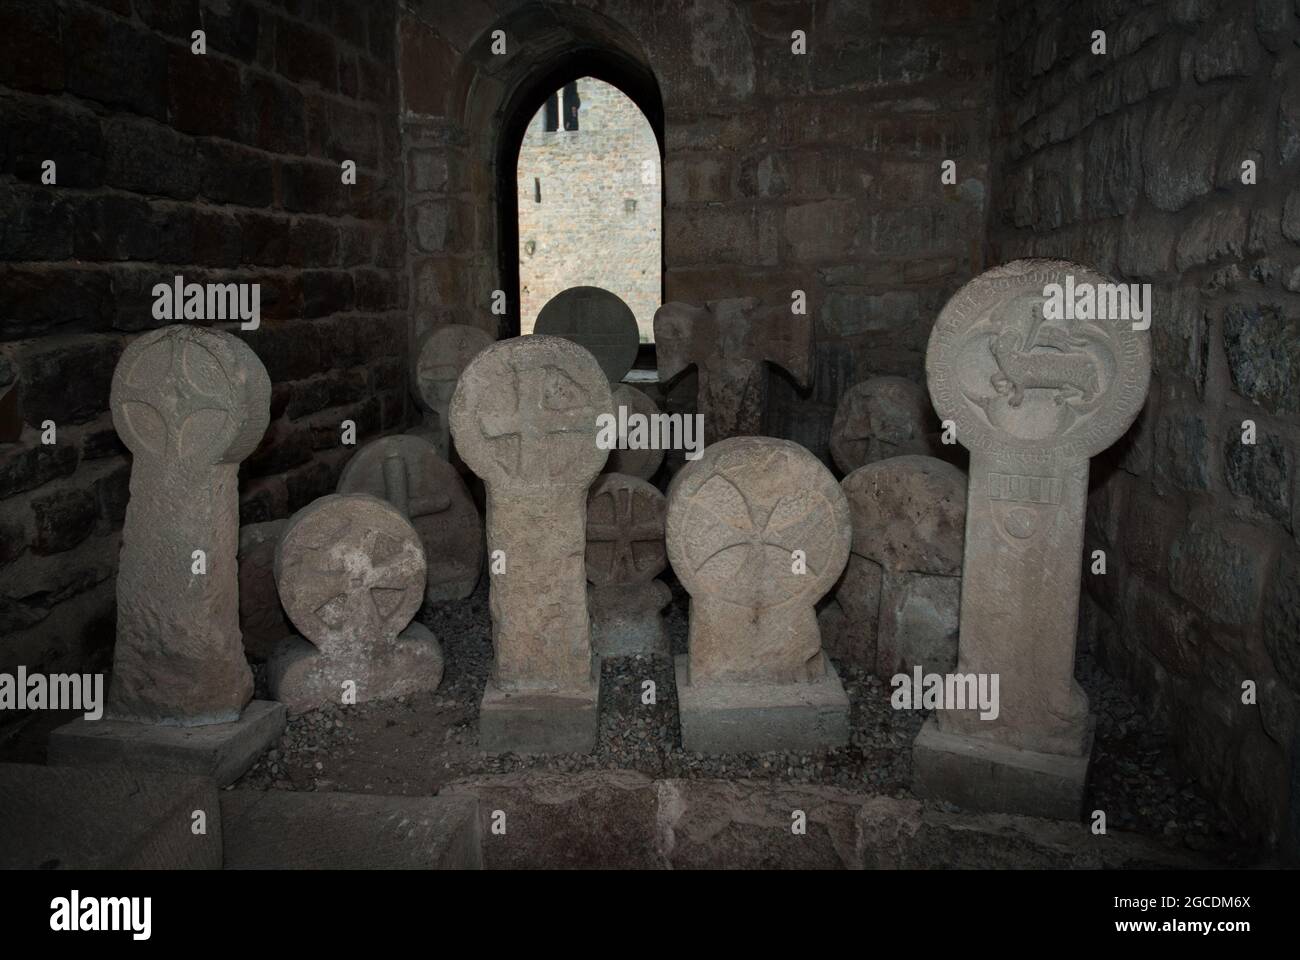 Pierres tombales du Moyen Age au musée du château de Carcassonne dans le sud de la France Banque D'Images